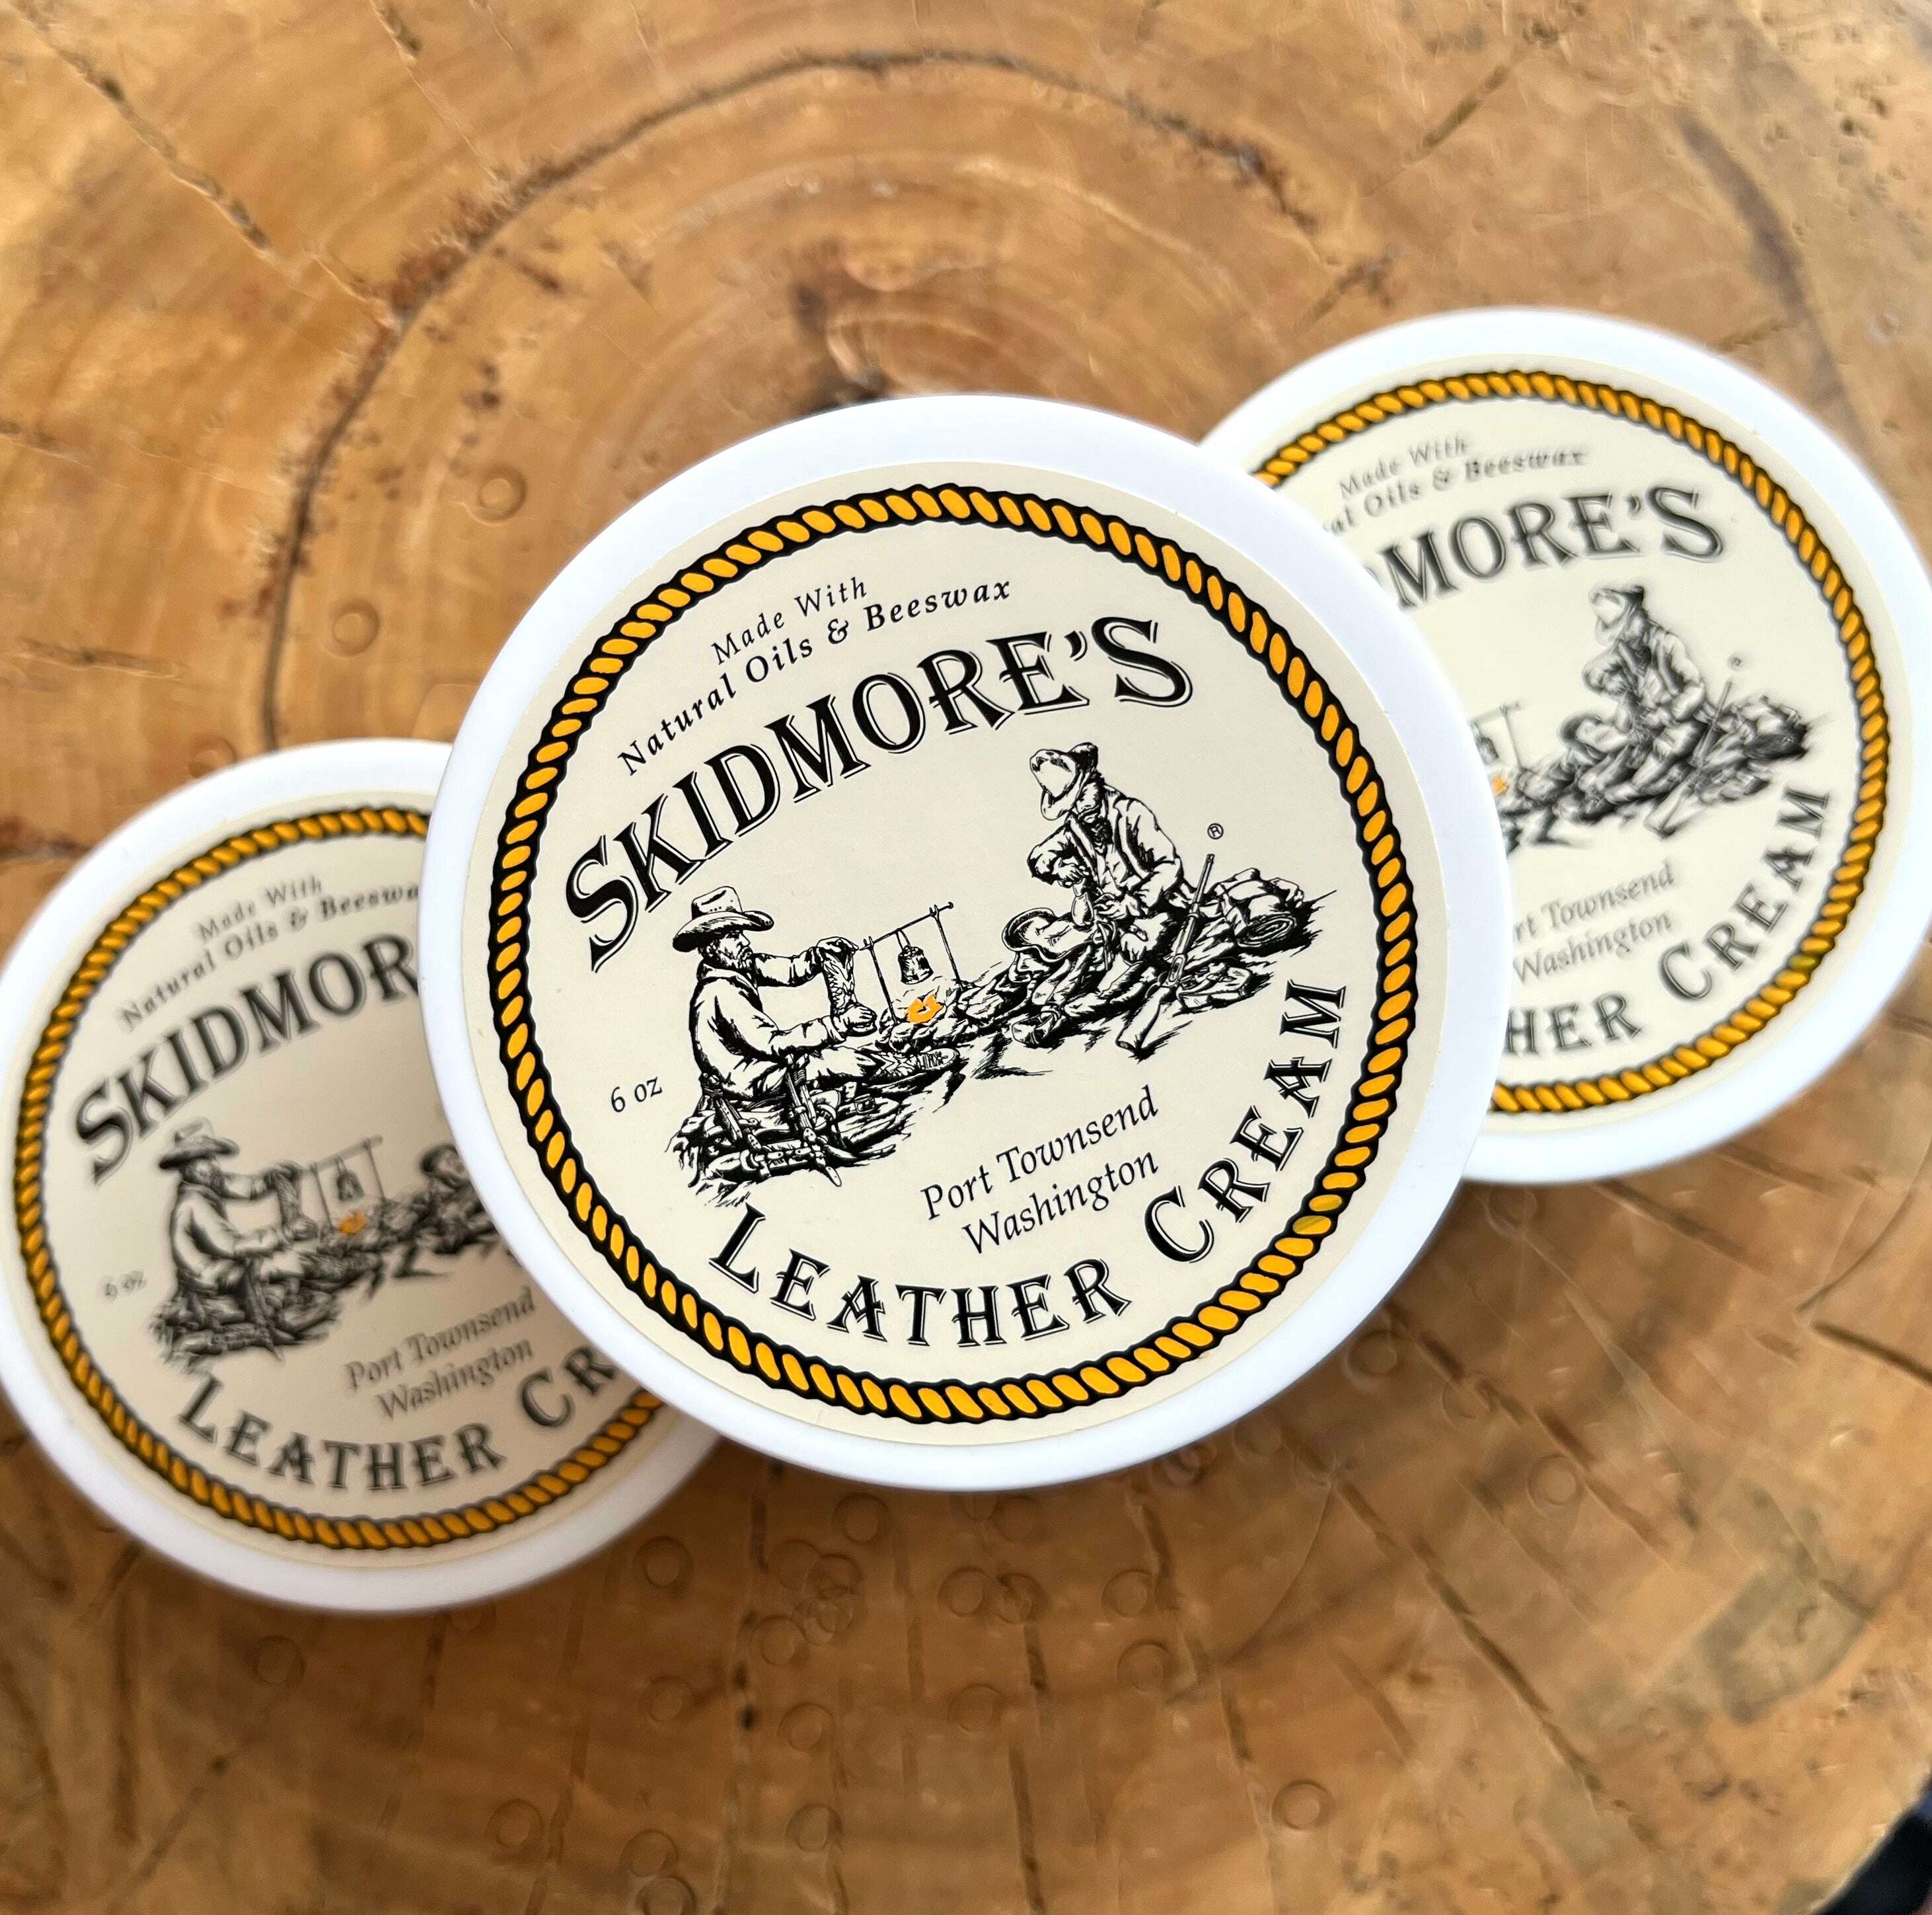 No. 213 Skidmore's Leather Cream – Billykirk